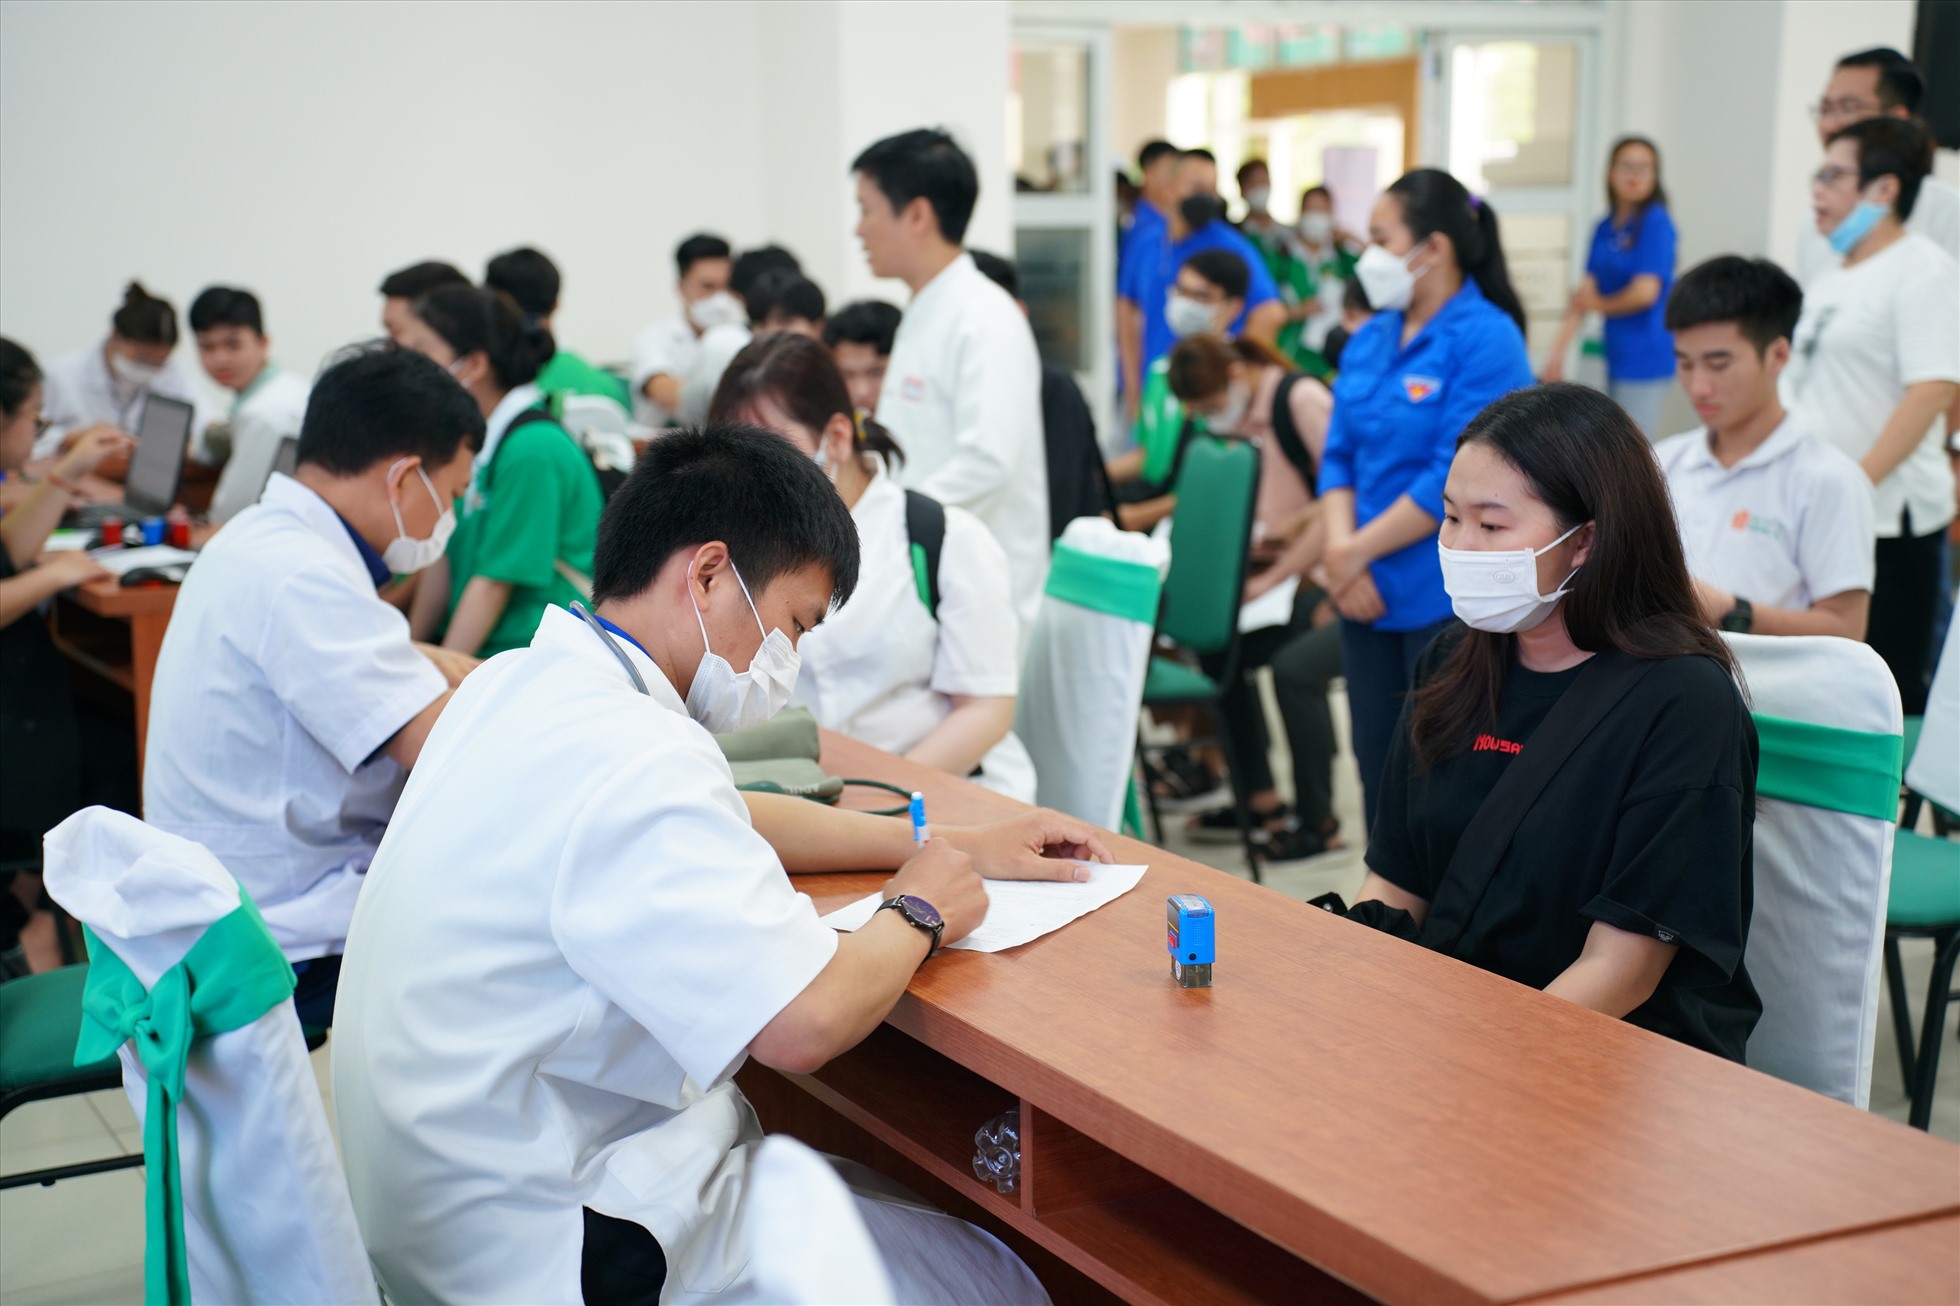 Đại học Đông Á: hơn 1000 lượt đăng ký hiến máu tình nguyện đợt 1 năm 2023